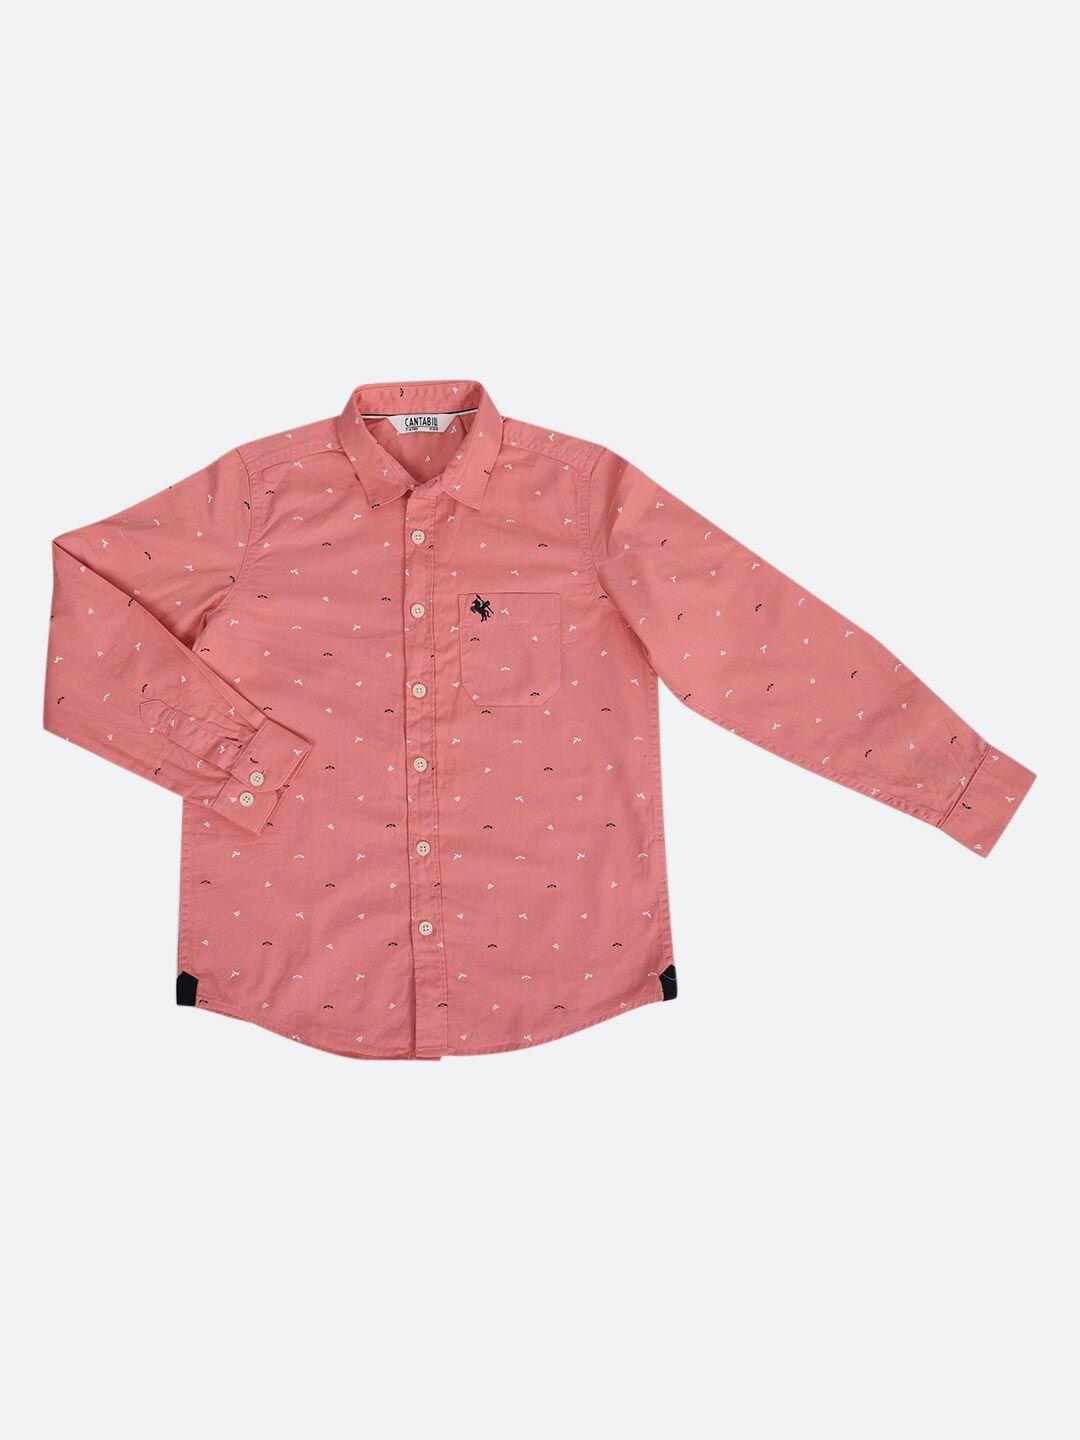 cantabil boys pink printed casual shirt